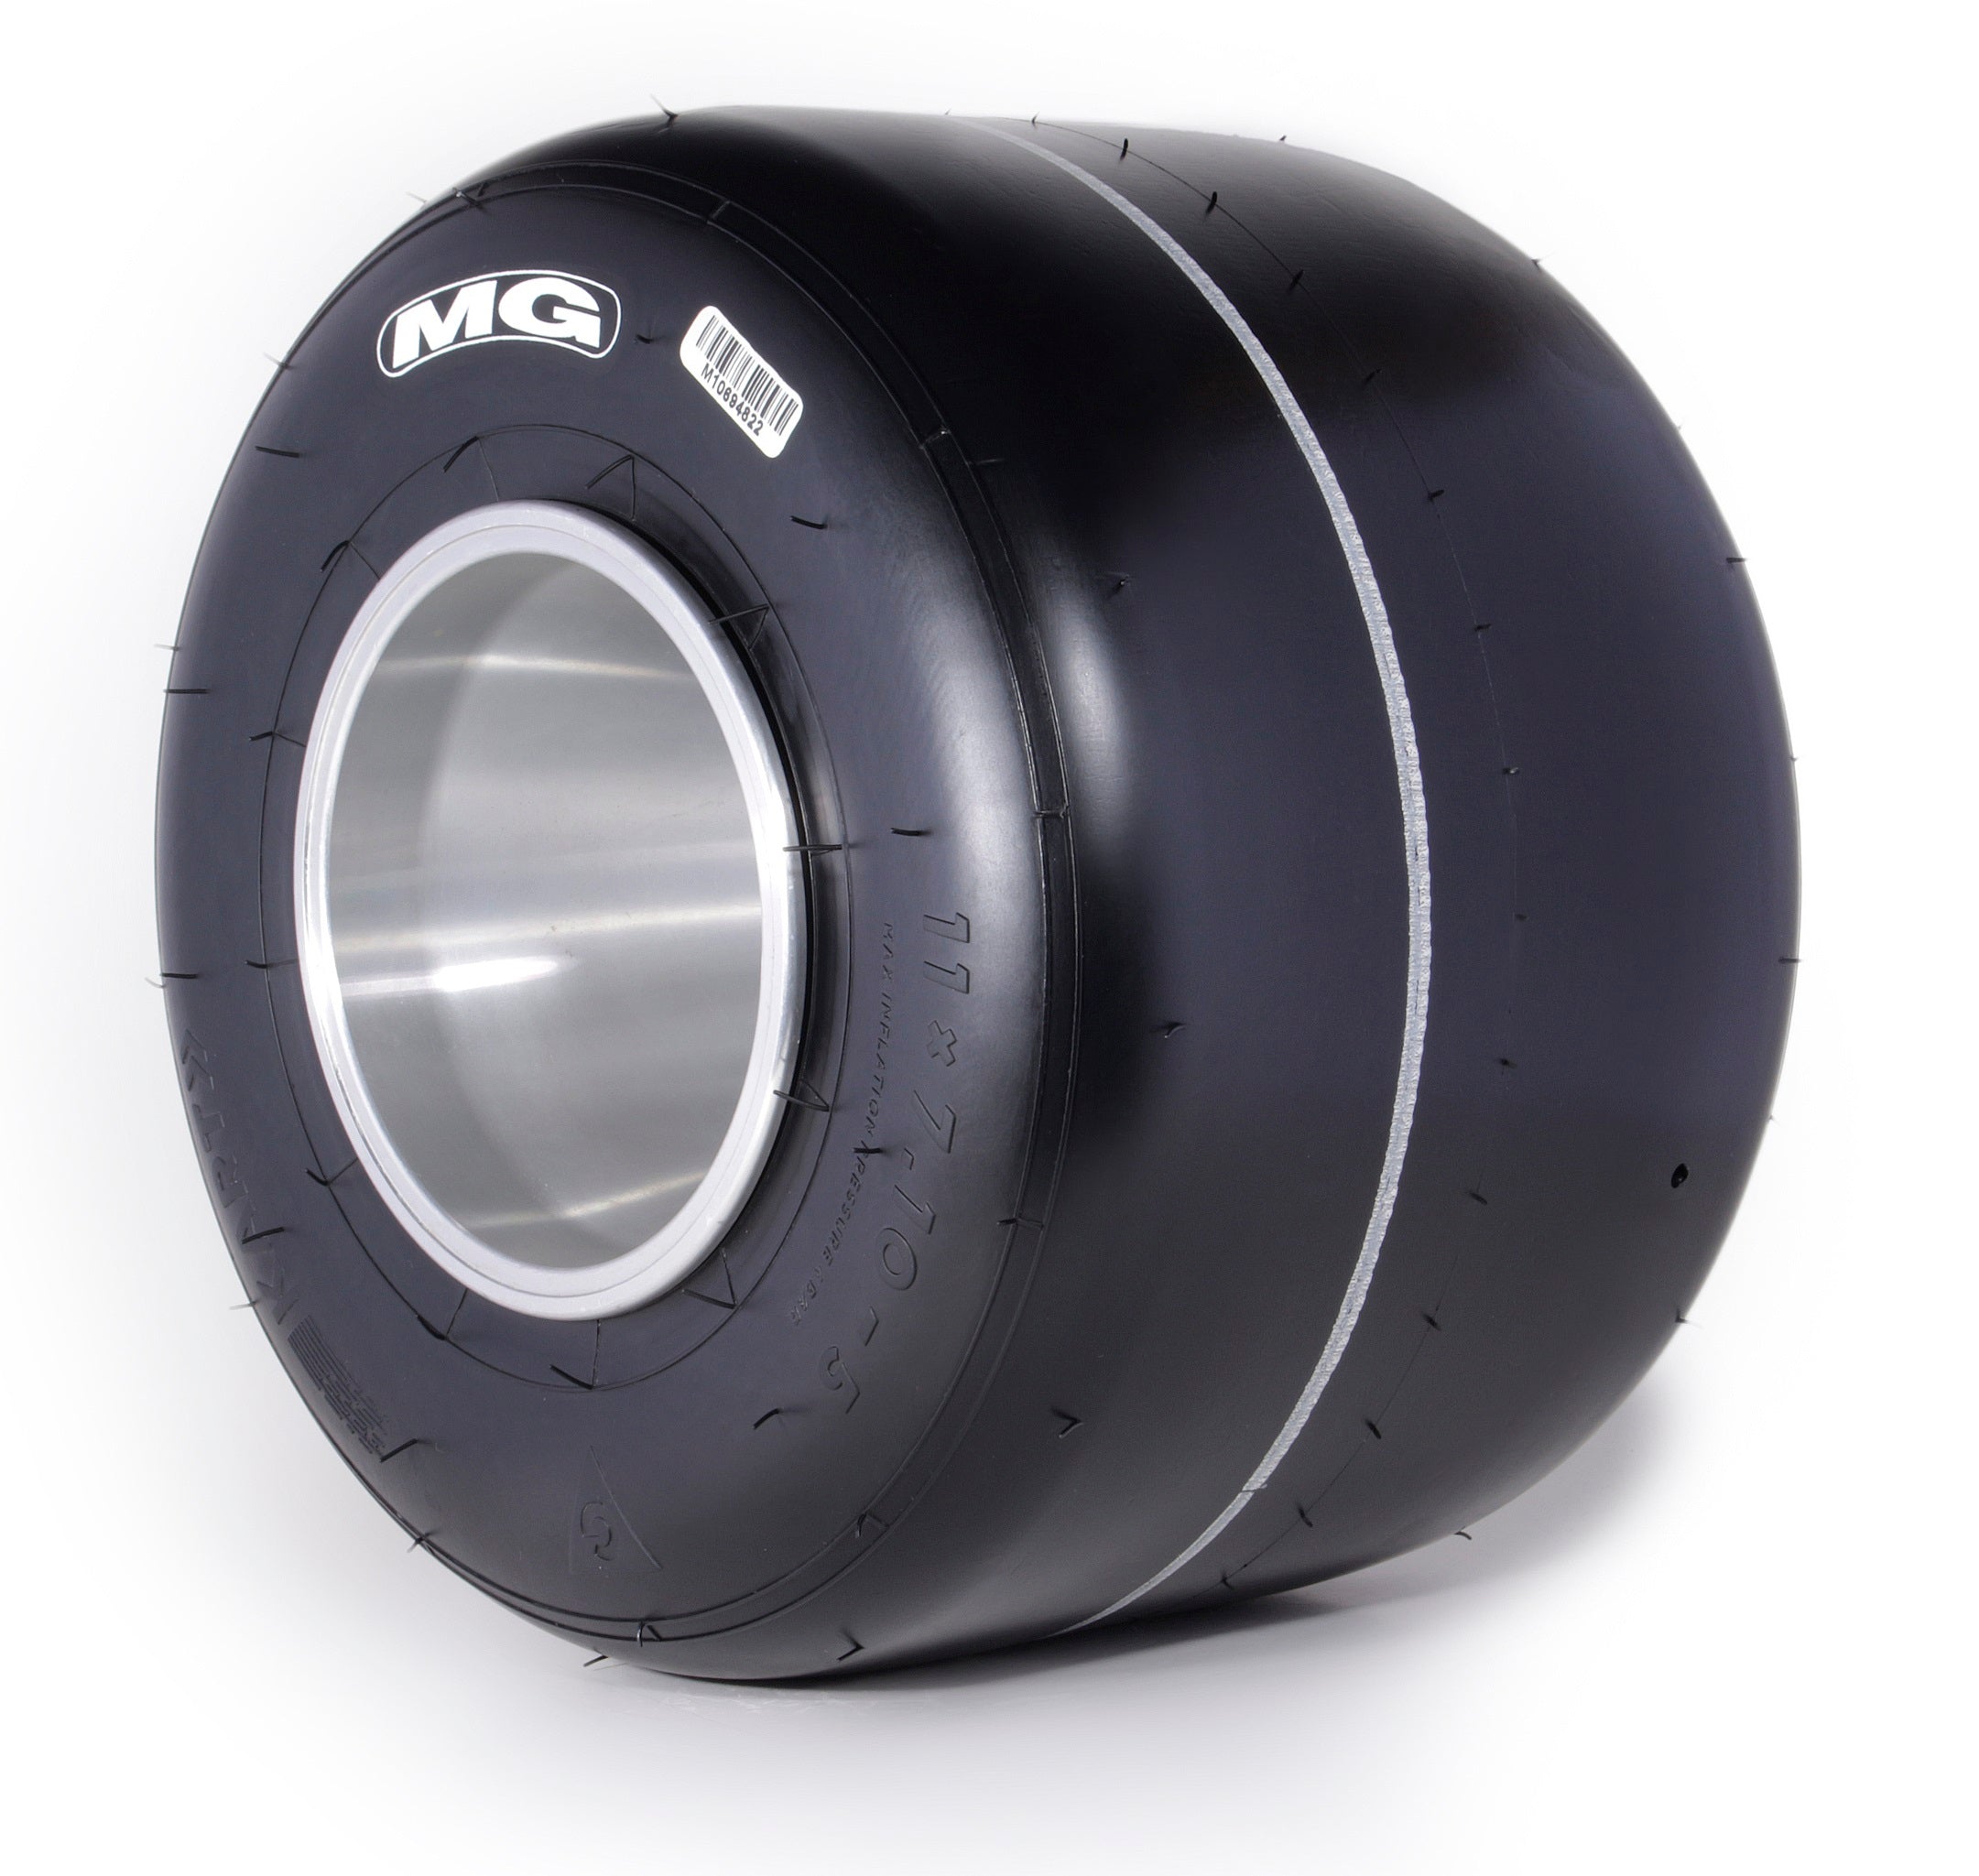 MG Tyre SI CIK/FIA 2020